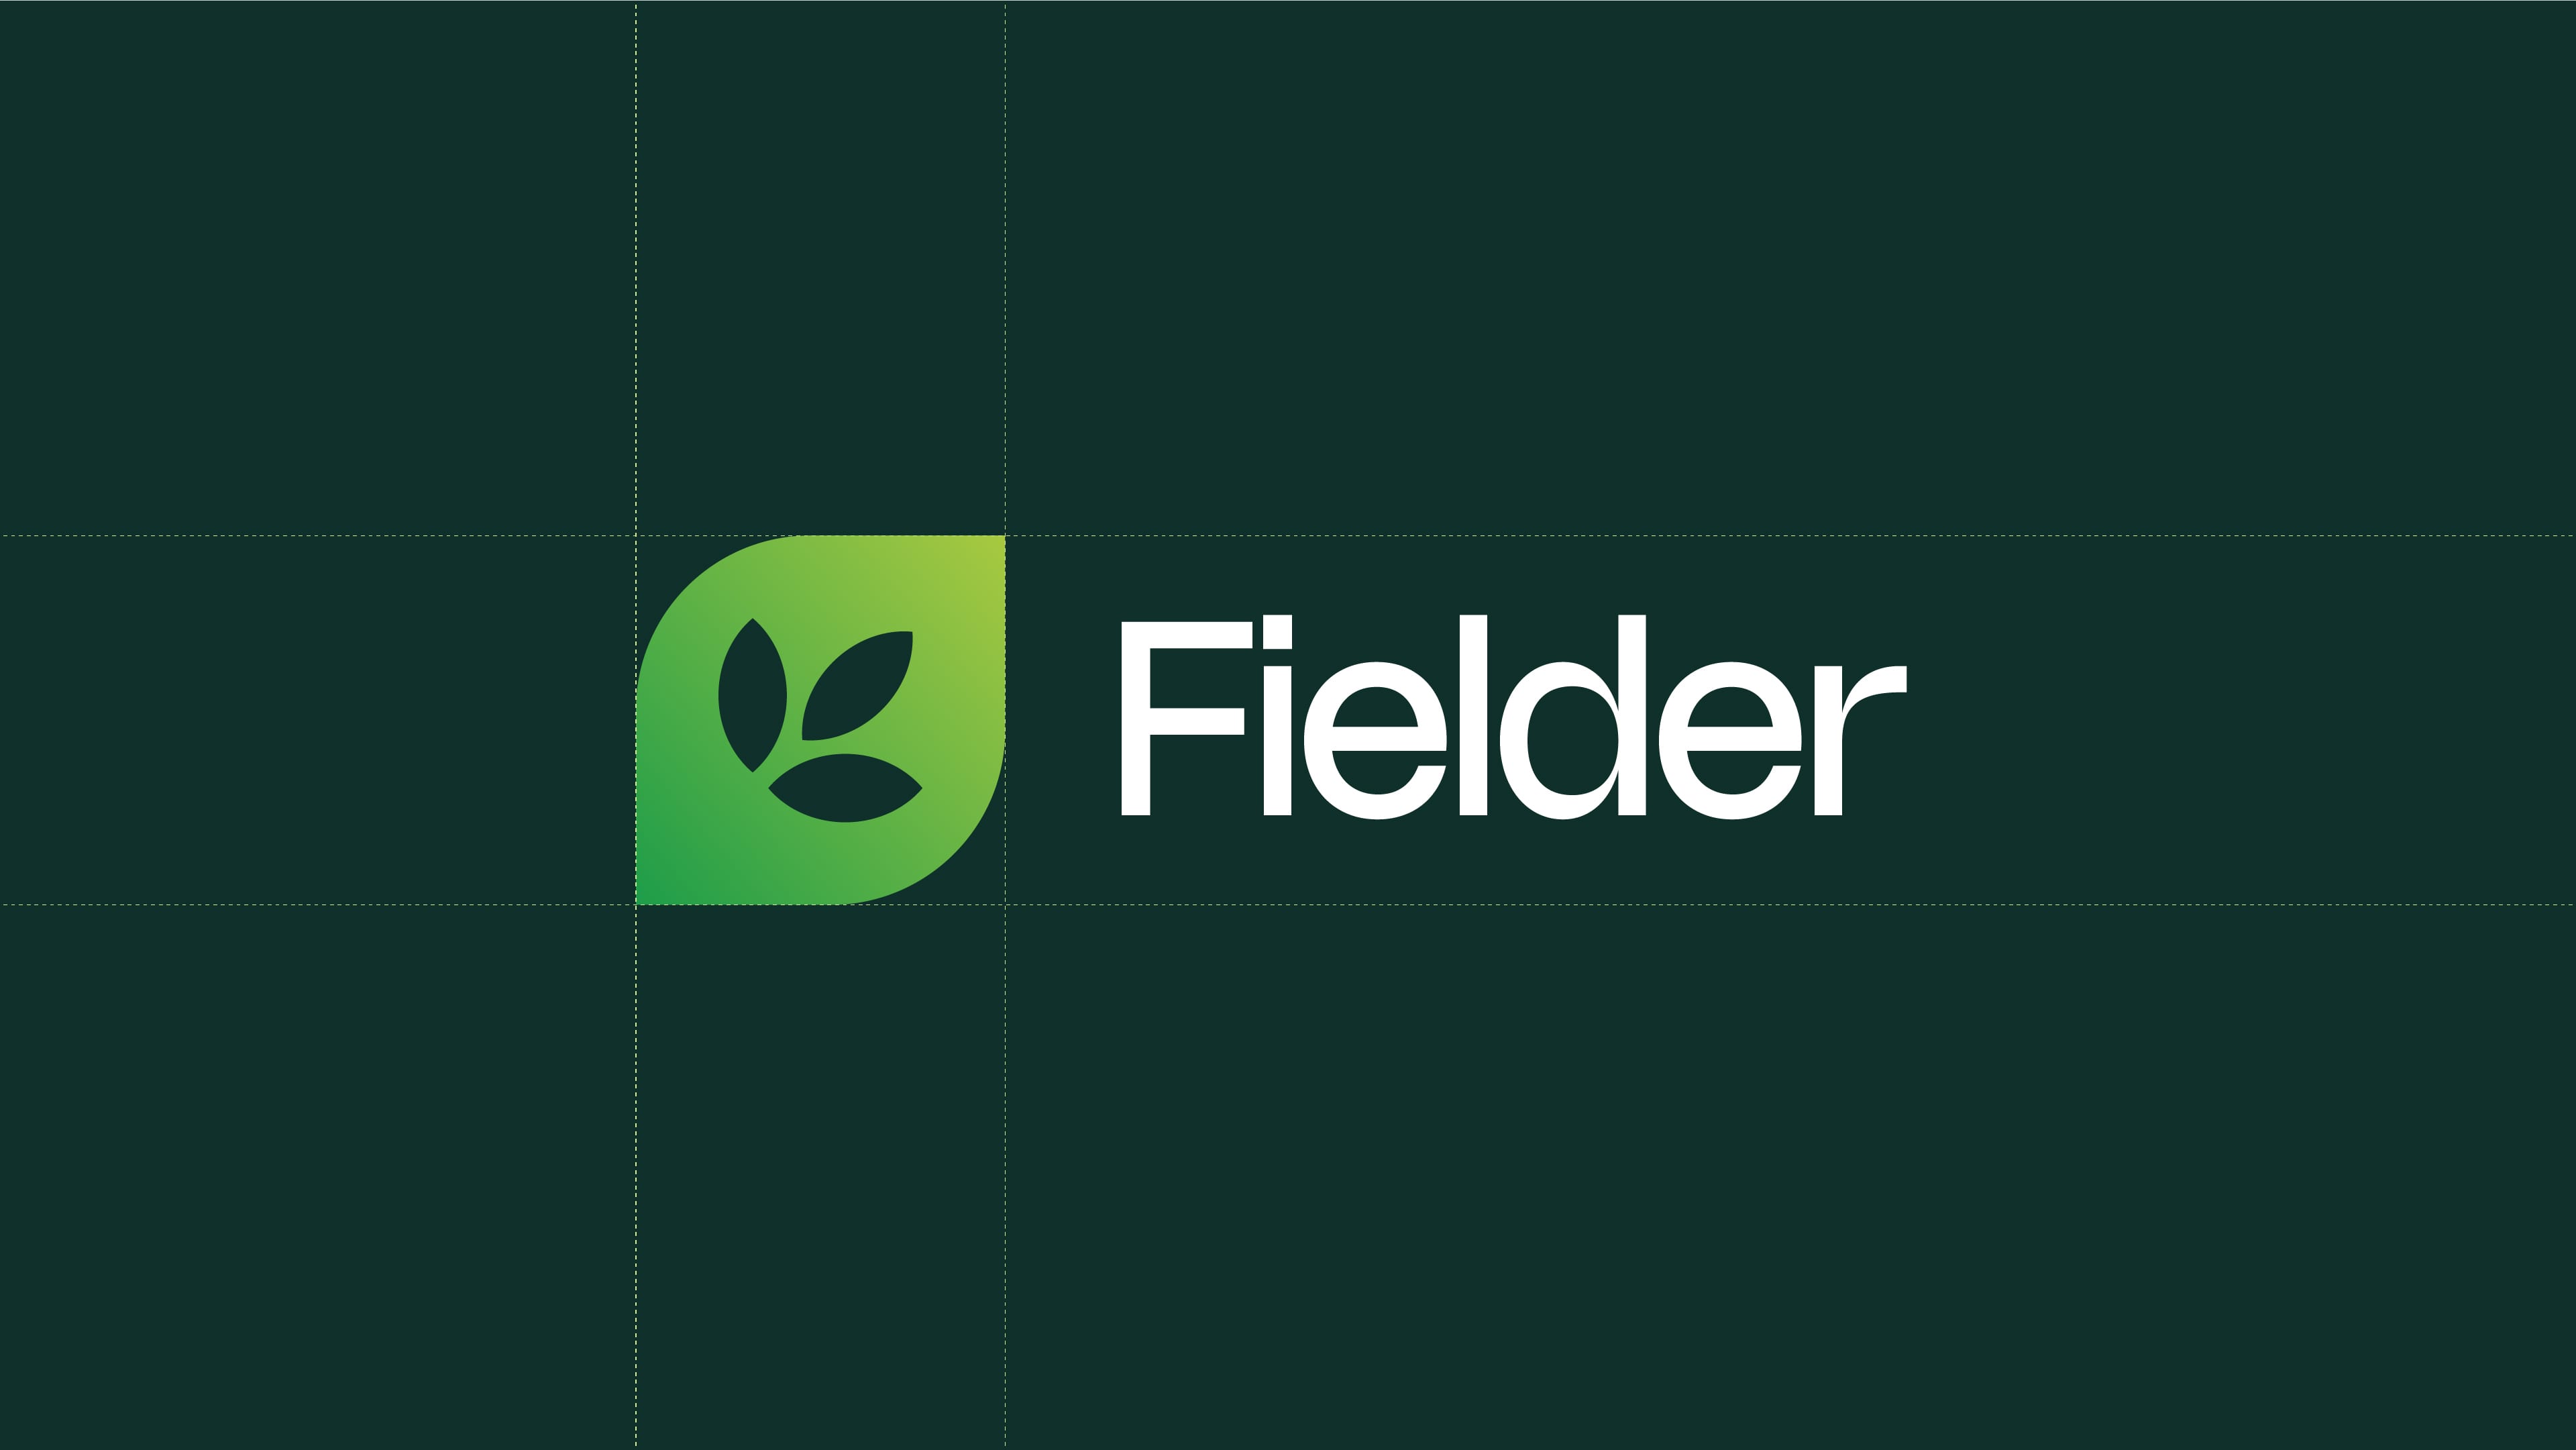 Fielder Nutrition branding